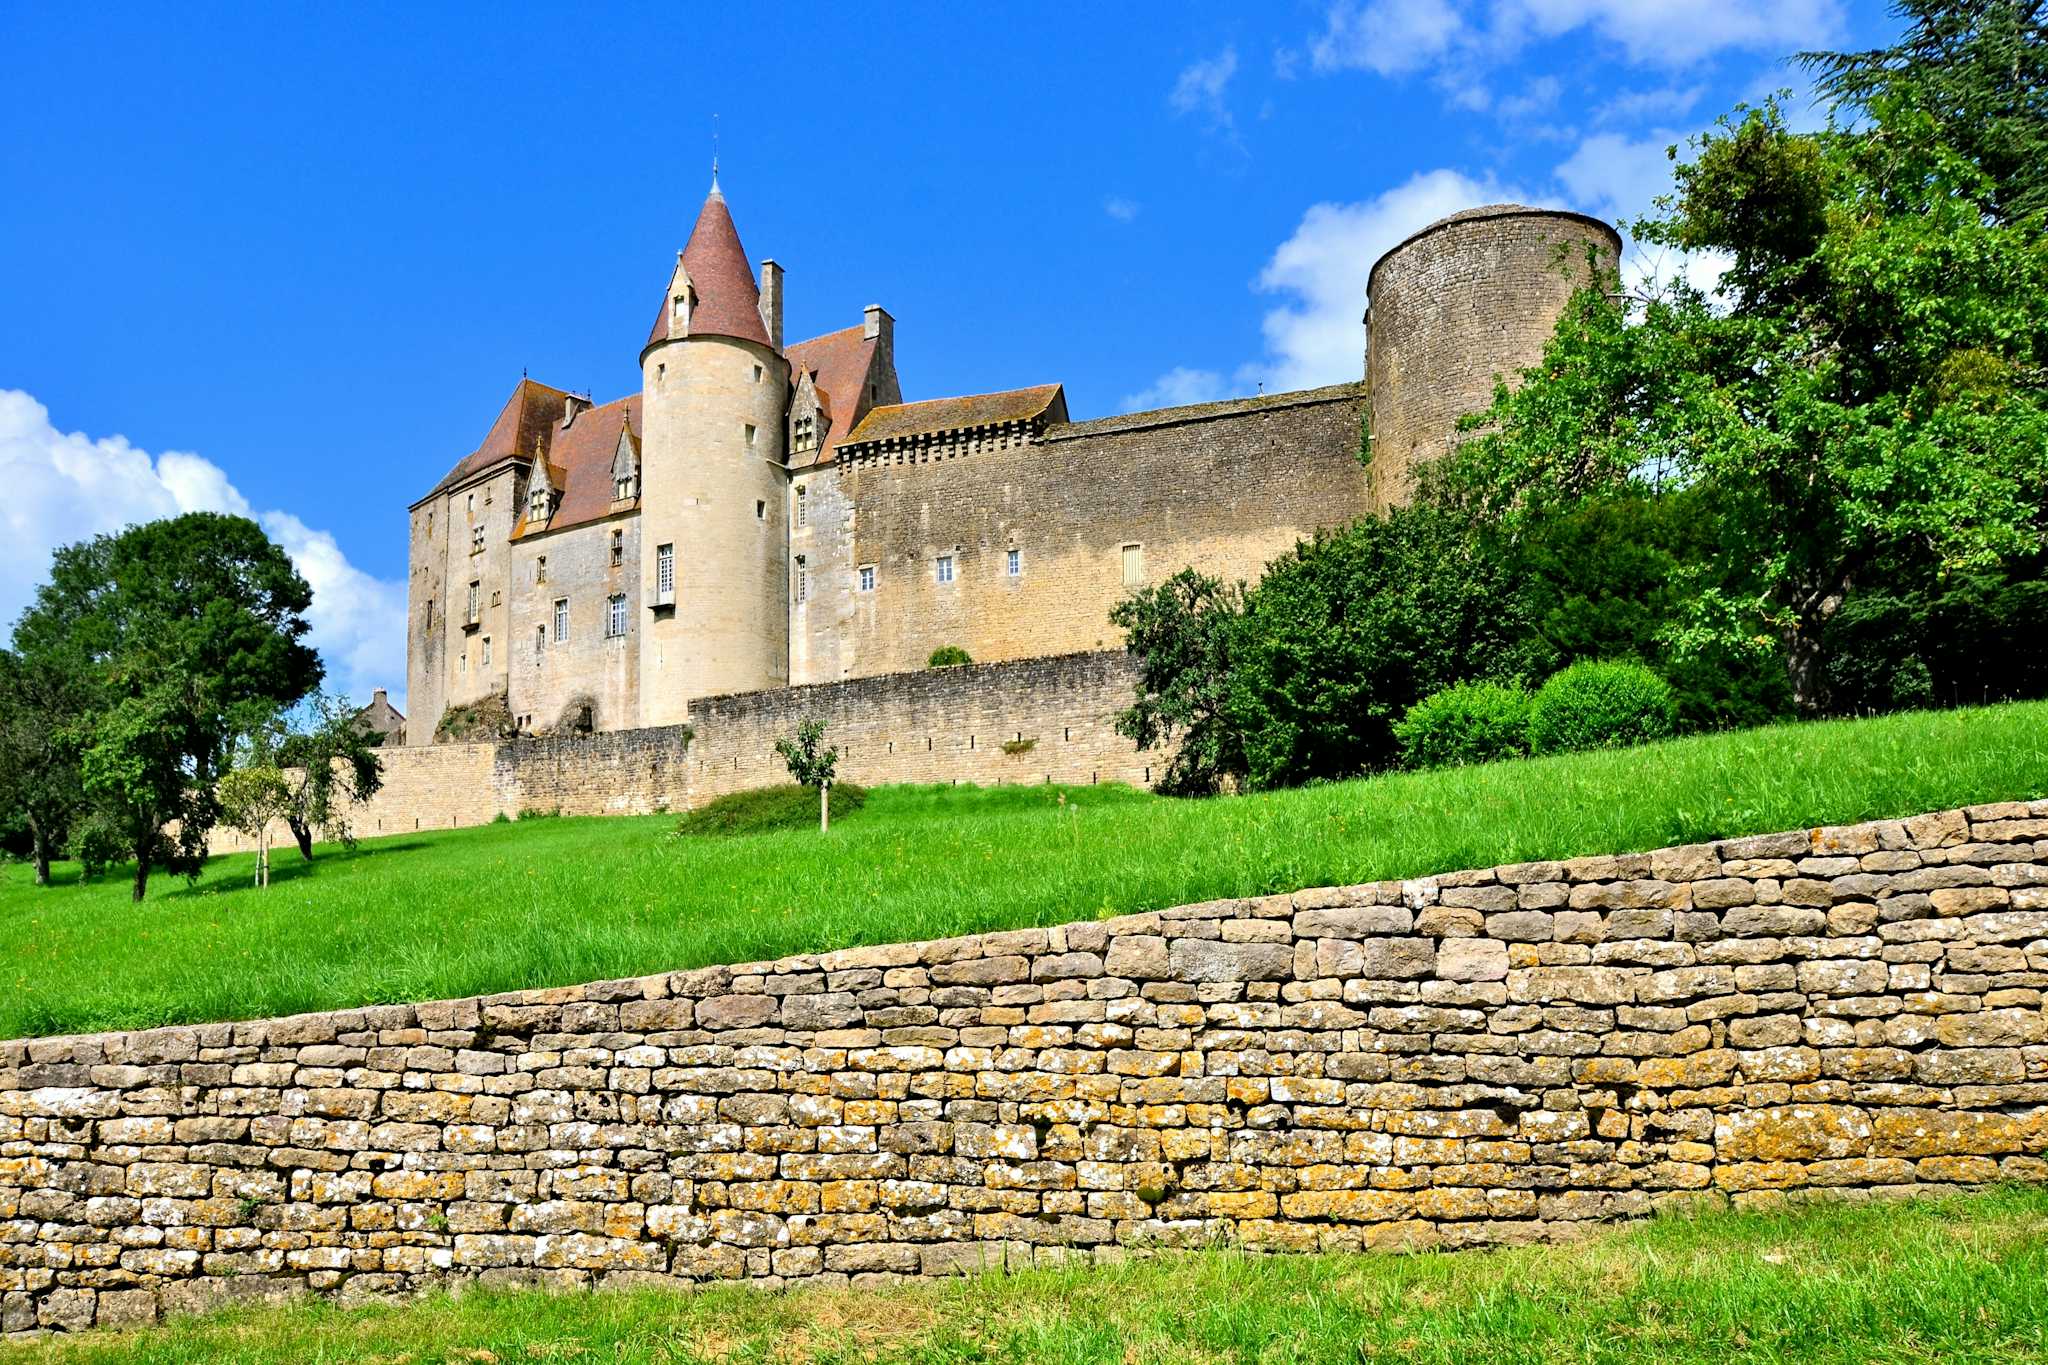 Chateau de Chateauneuf